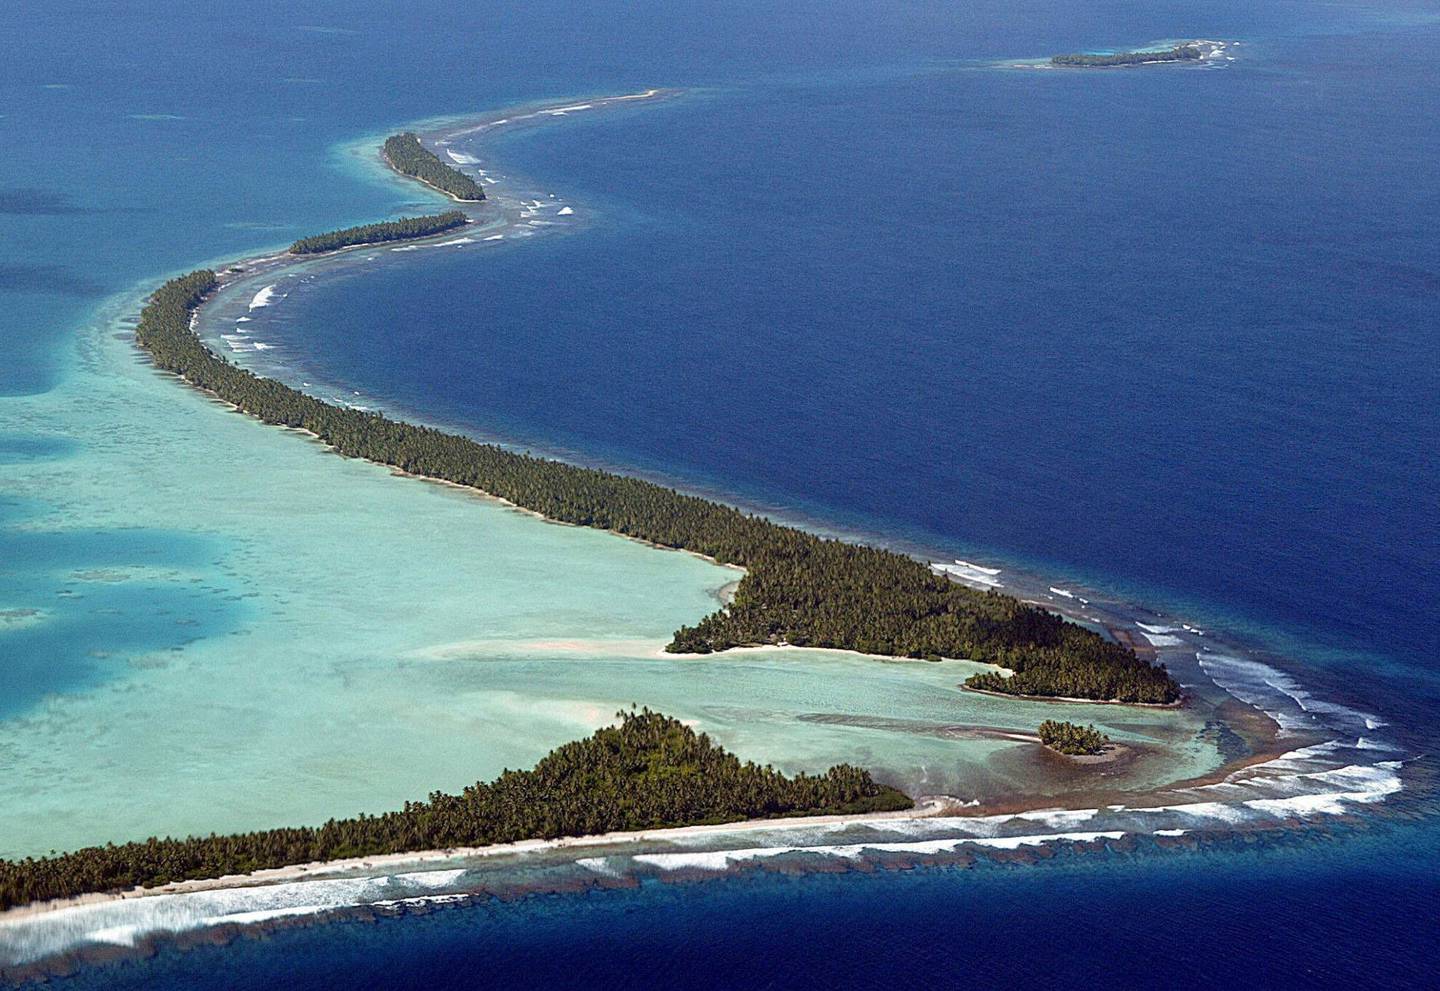 Tuvalu tilhører Marshalløyene i Stillehavet, og vil forsvinne under havoverflaten dersom havet stiger.